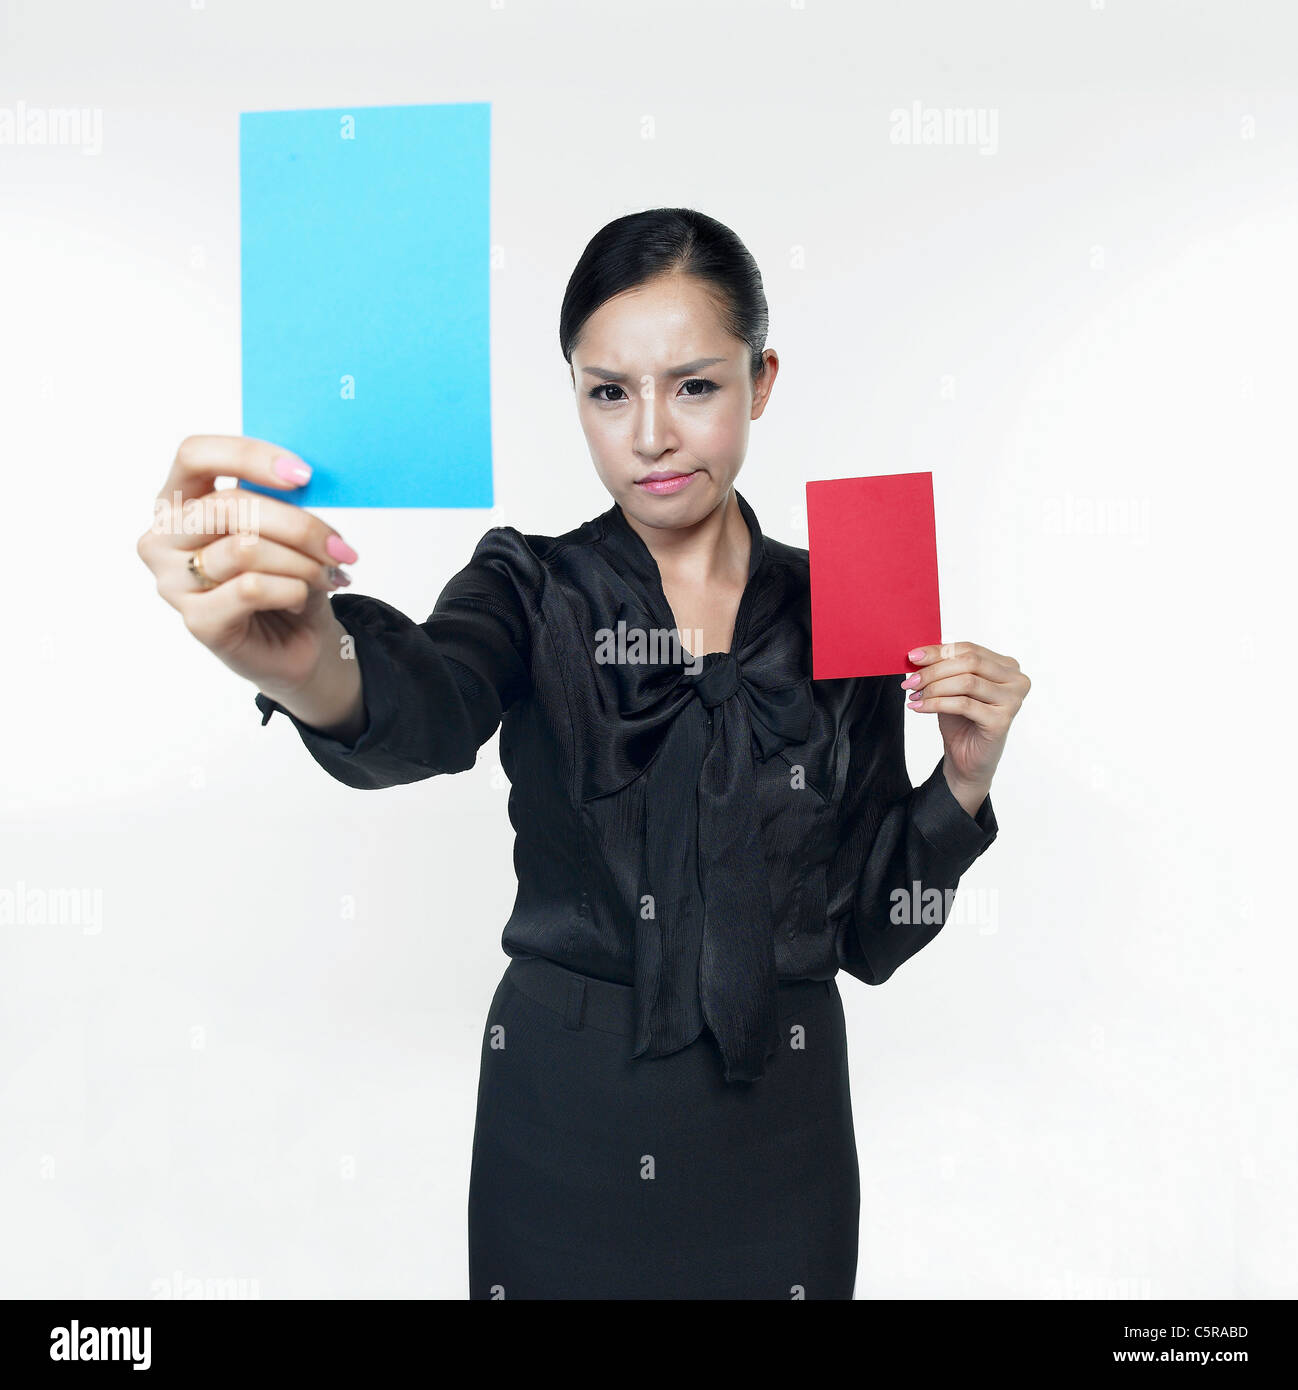 Une femme tenant une carte rouge et une carte bleu Banque D'Images